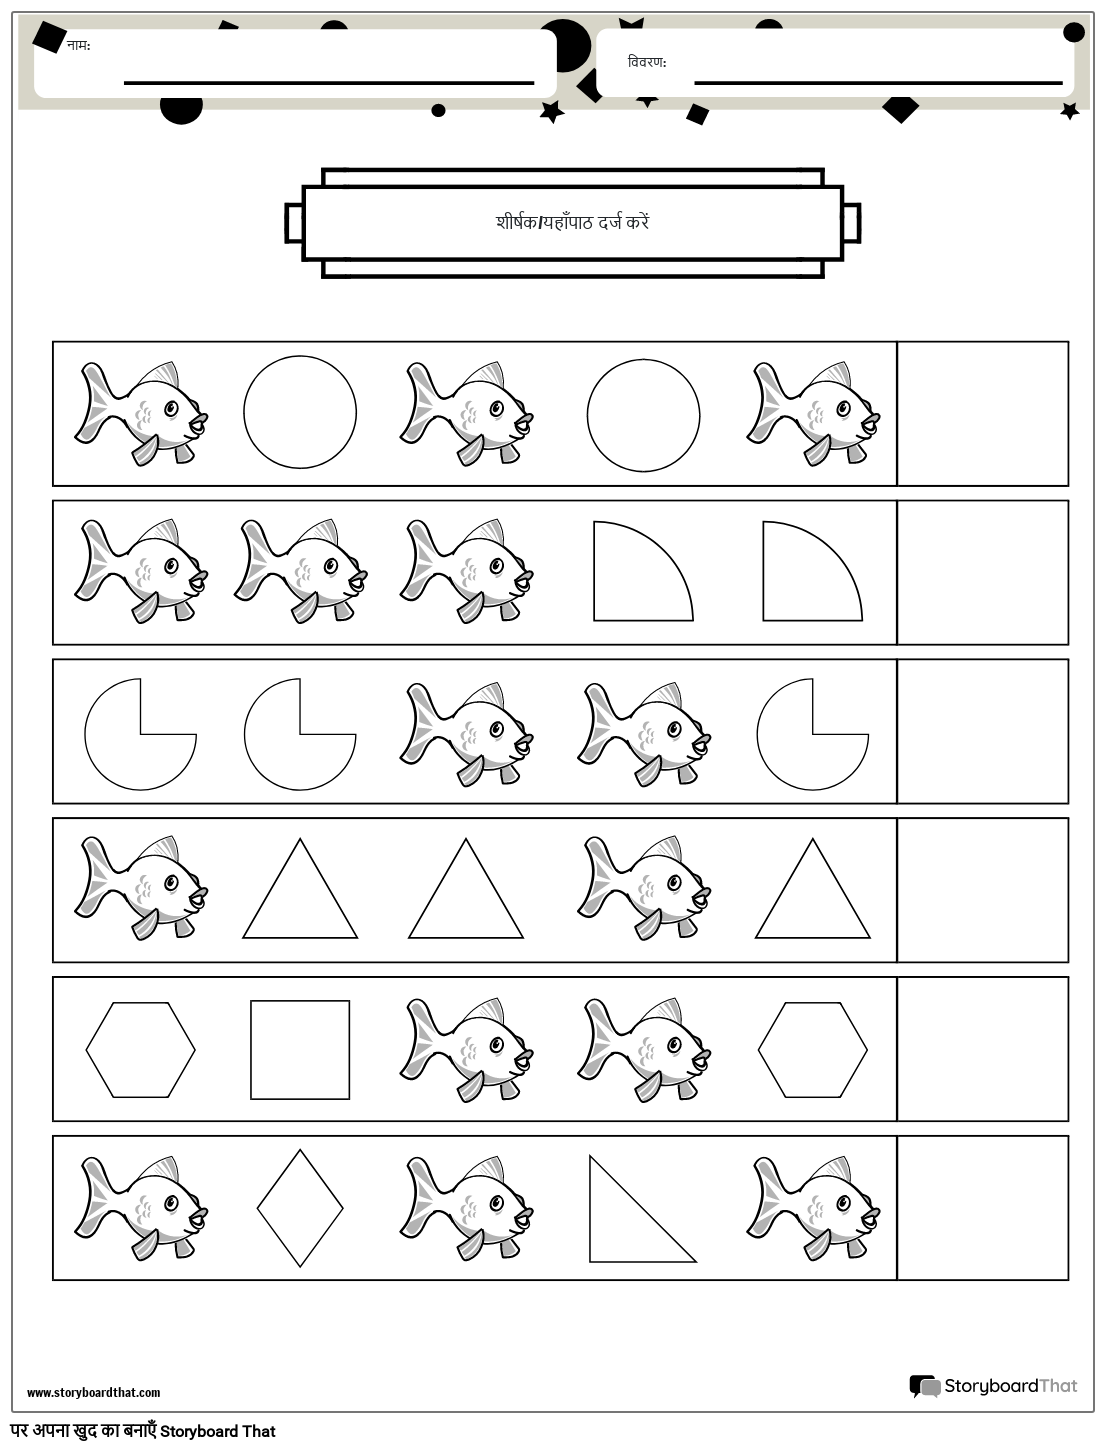 मछलियाँ और आकृतियाँ पैटर्न वर्कशीट (काला और सफेद)